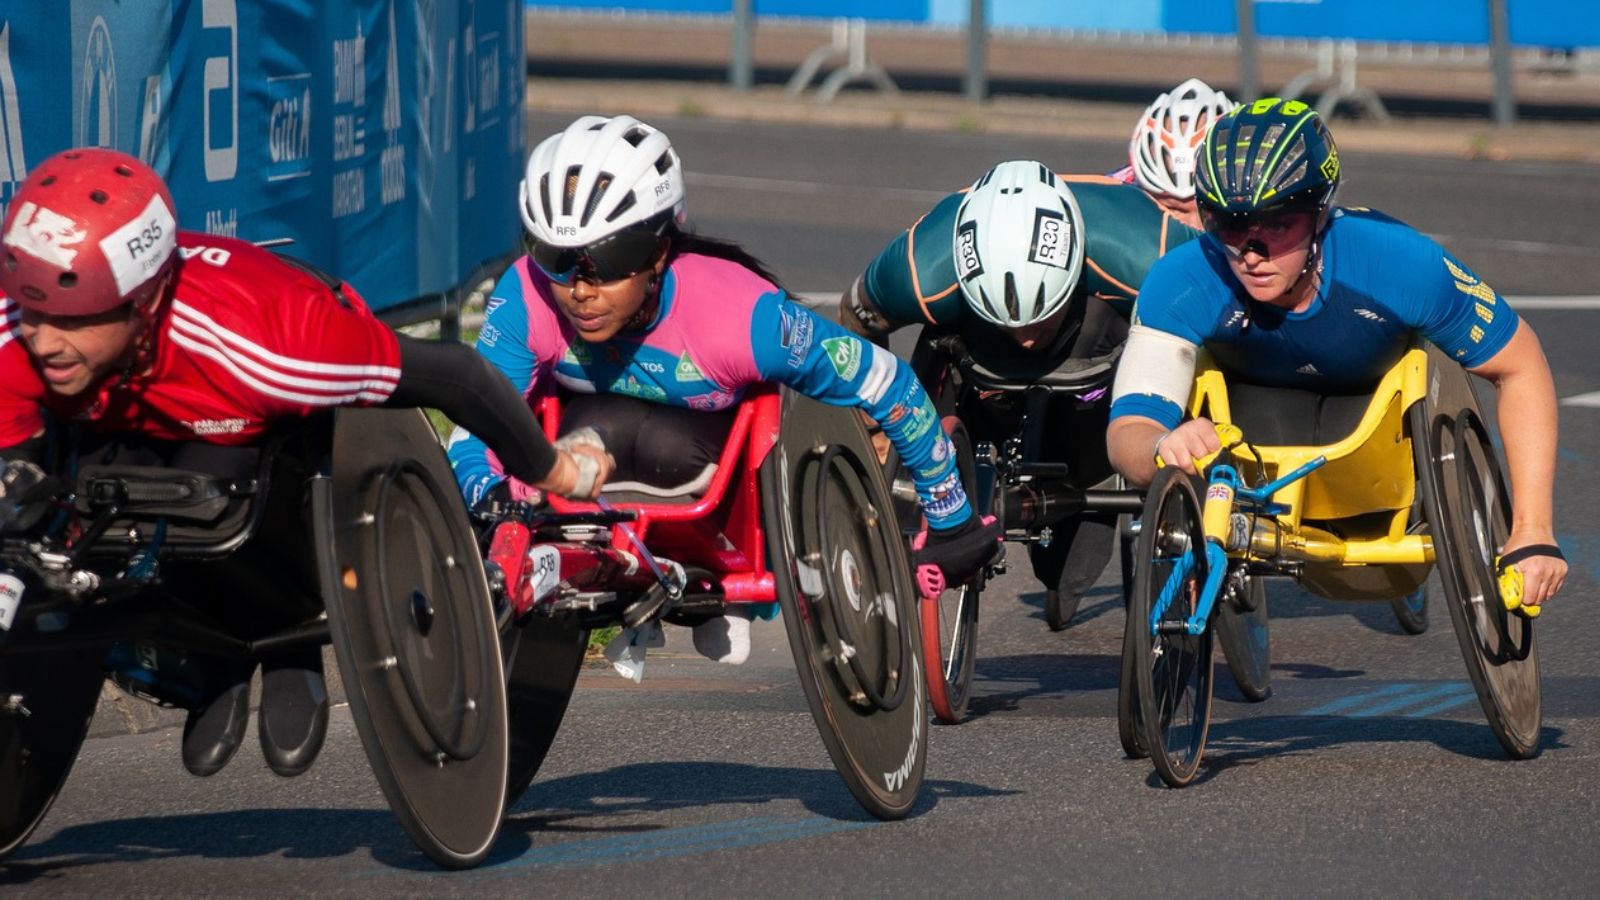 Personas en sillas de ruedas compitiendo en una carrera sobre una pista de asfalto